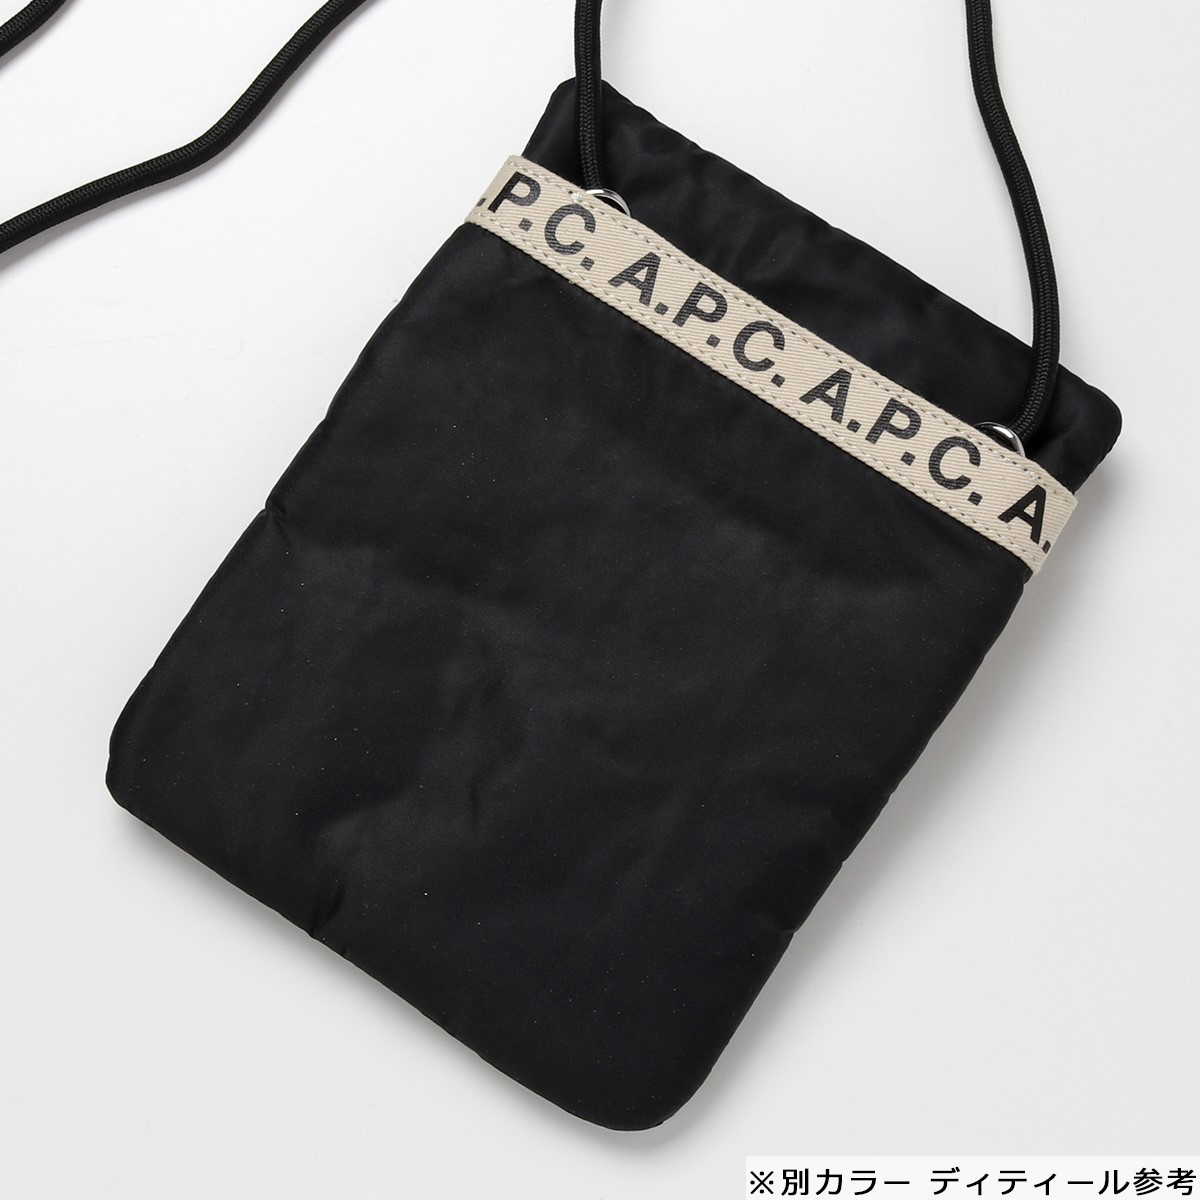 APC A.P.C. アーペーセー PAACL H63390 neck pouch repeat ネックポーチ ショルダーバッグ ポシェット 鞄  JAA/KAKI レディース メンズ | インポートセレクト musee